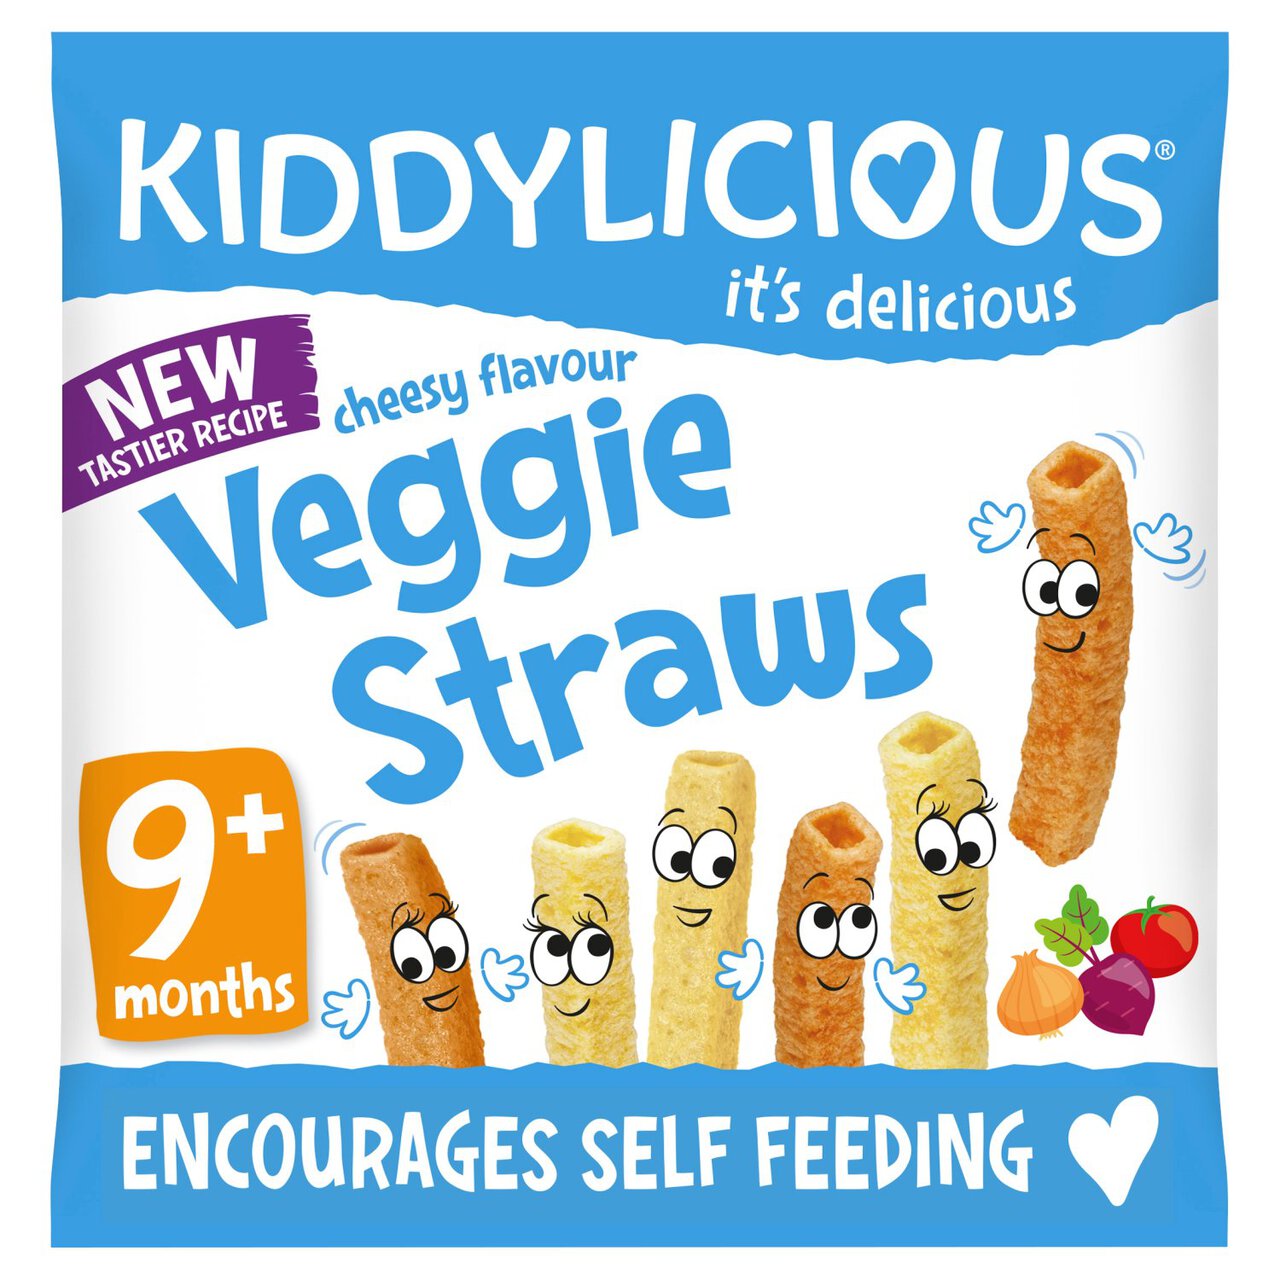 Kiddylicious Cheesy Veggie Straws, 9 mths+ 12g